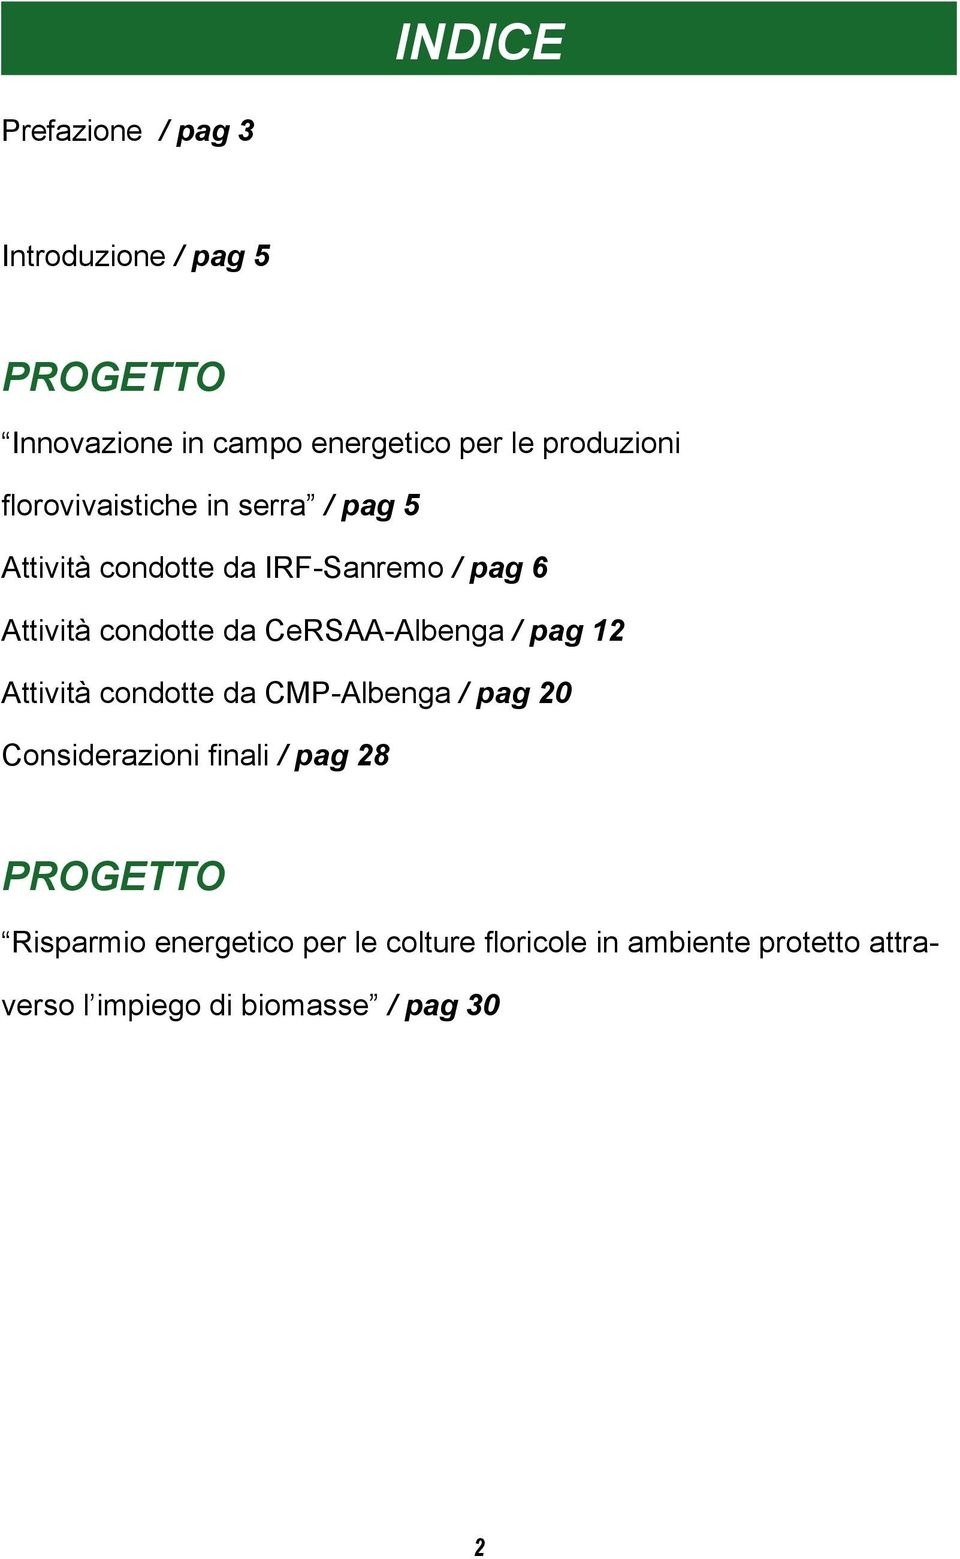 da CeRSAA-Albenga / pag 12 Attività condotte da CMP-Albenga / pag 20 Considerazioni finali / pag 28